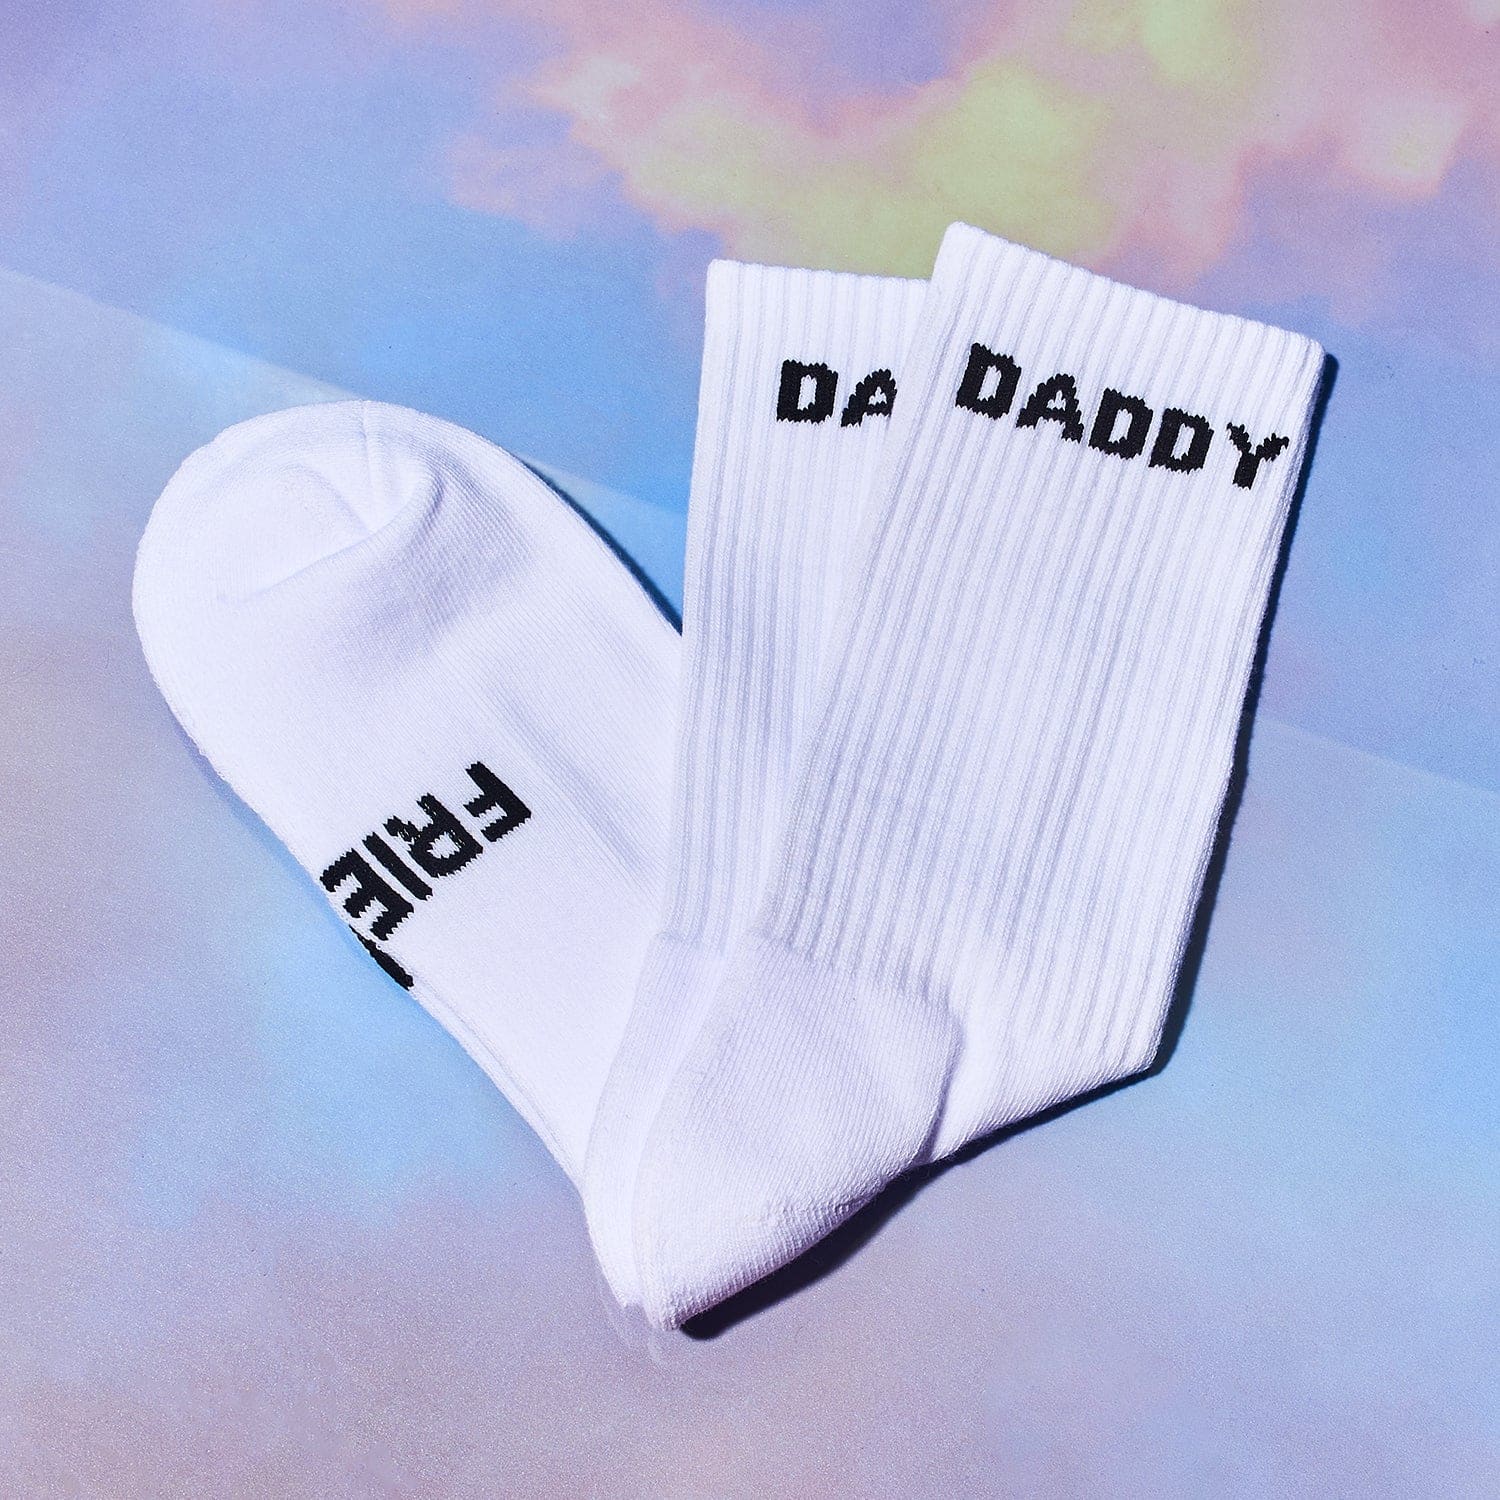 Friends Nyc Daddy Socks - Unisex Boyfriend Gifts - Cute